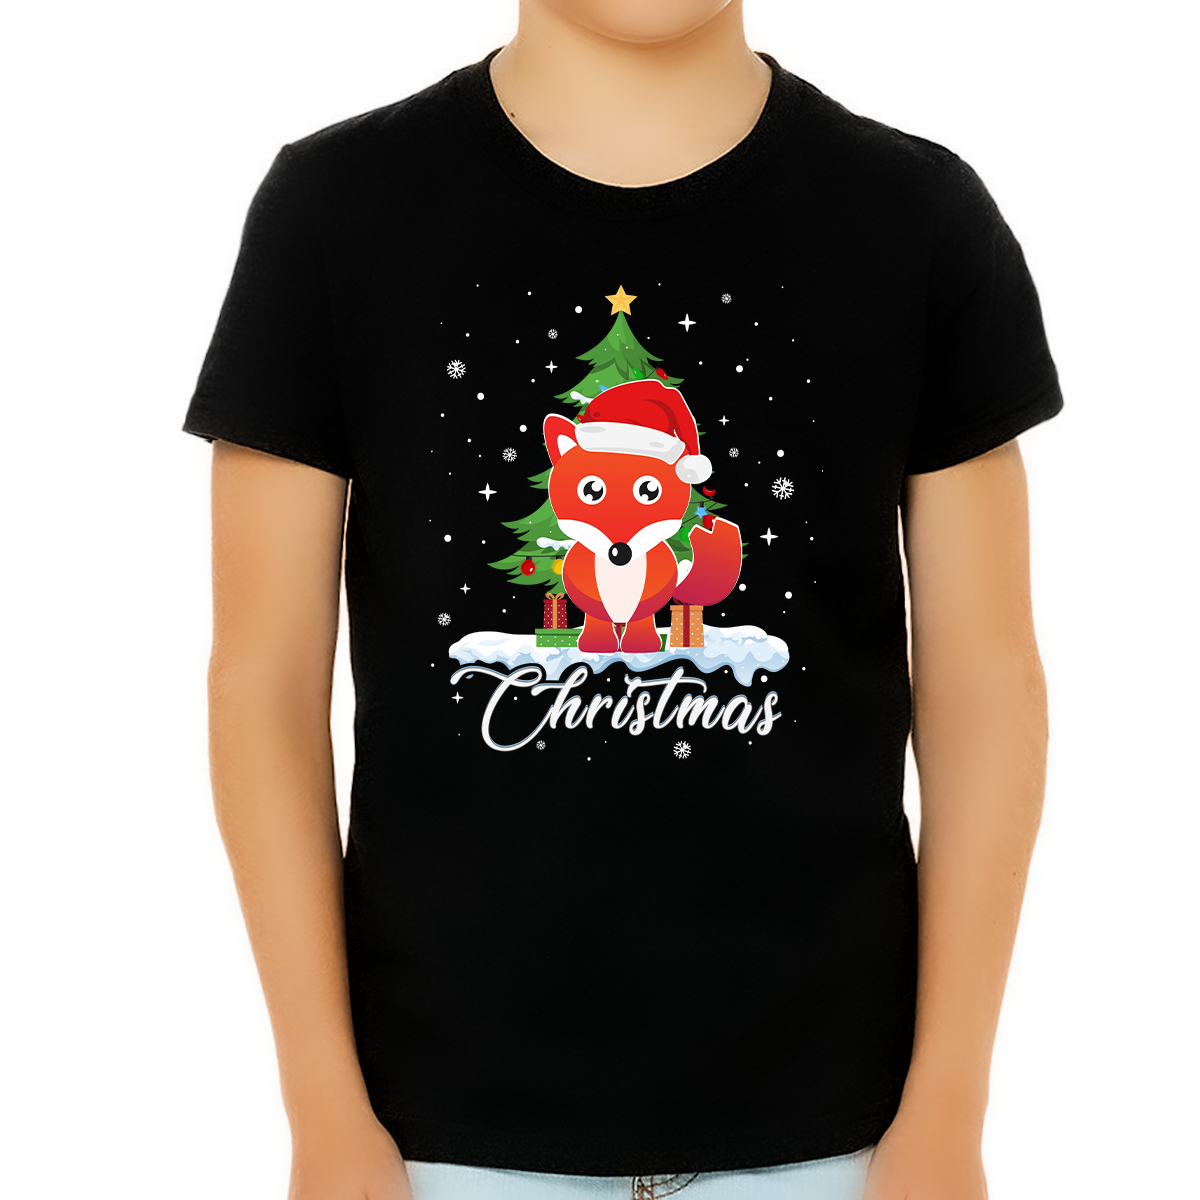 Boys Christmas Shirt Christmas Shirts for Boys Cute Fox Santa Christmas Shirts for Kids